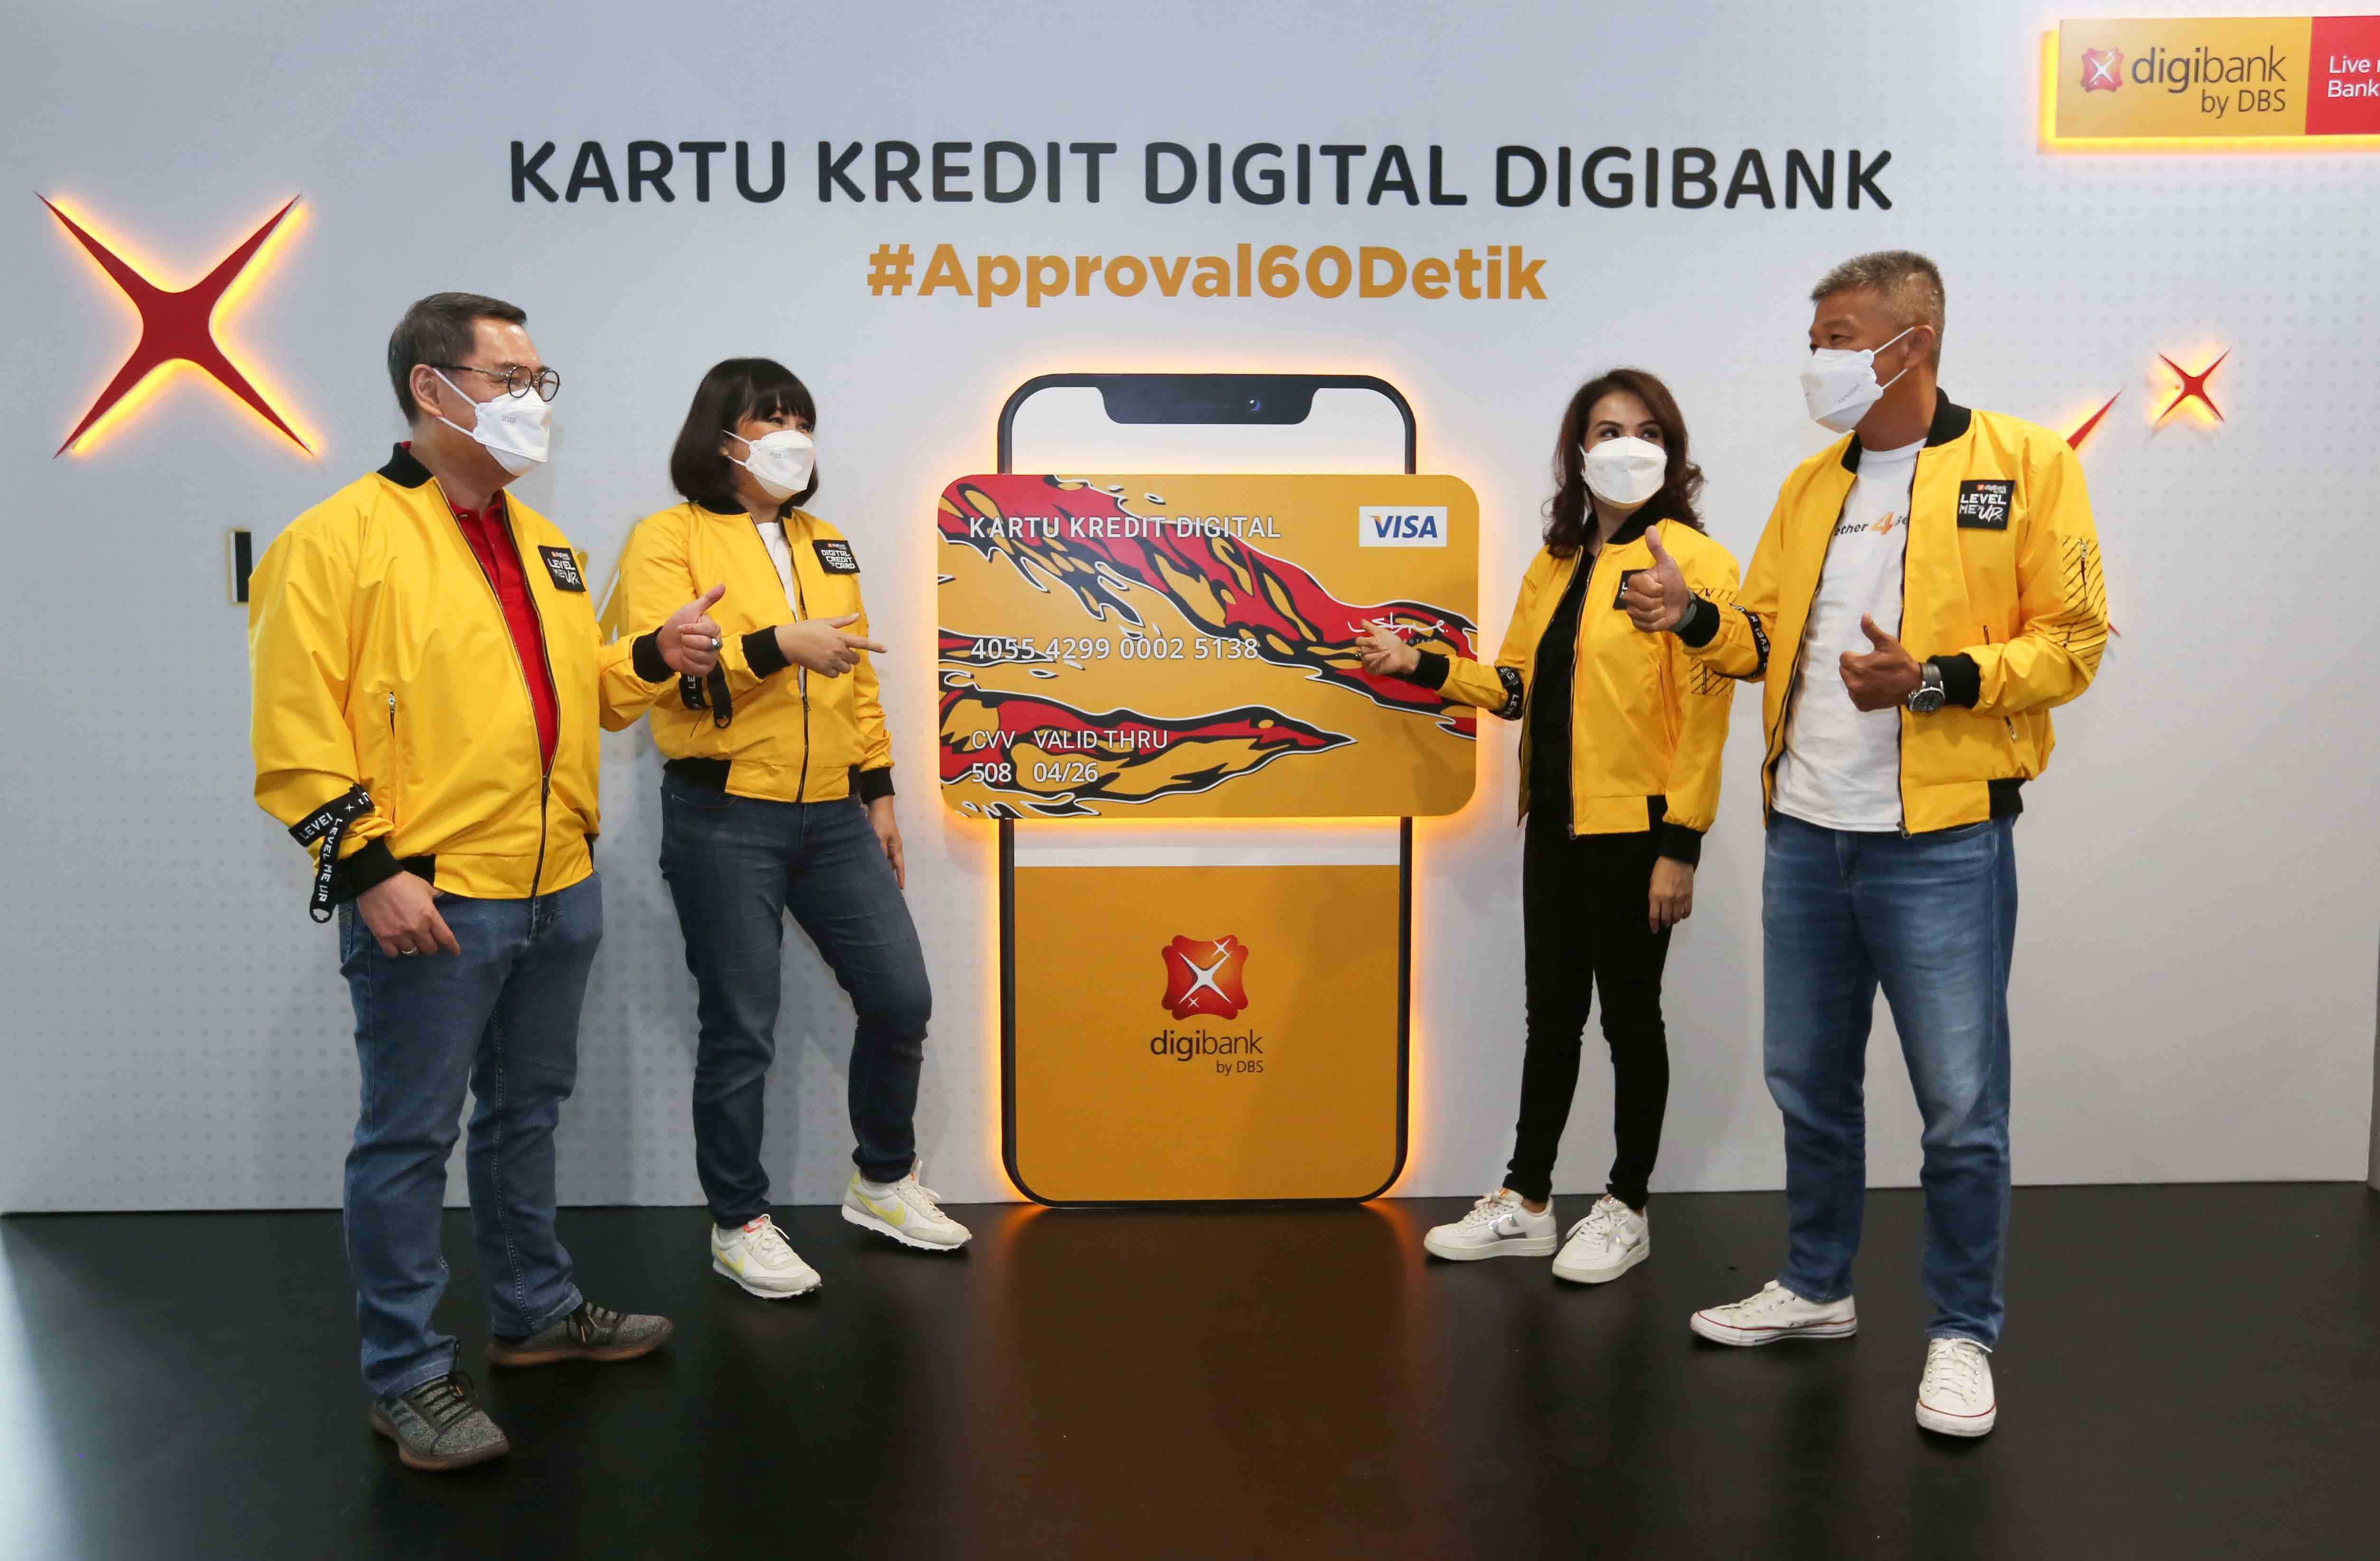 DBS luncurkan Kartu Kredit Digital digibank 2